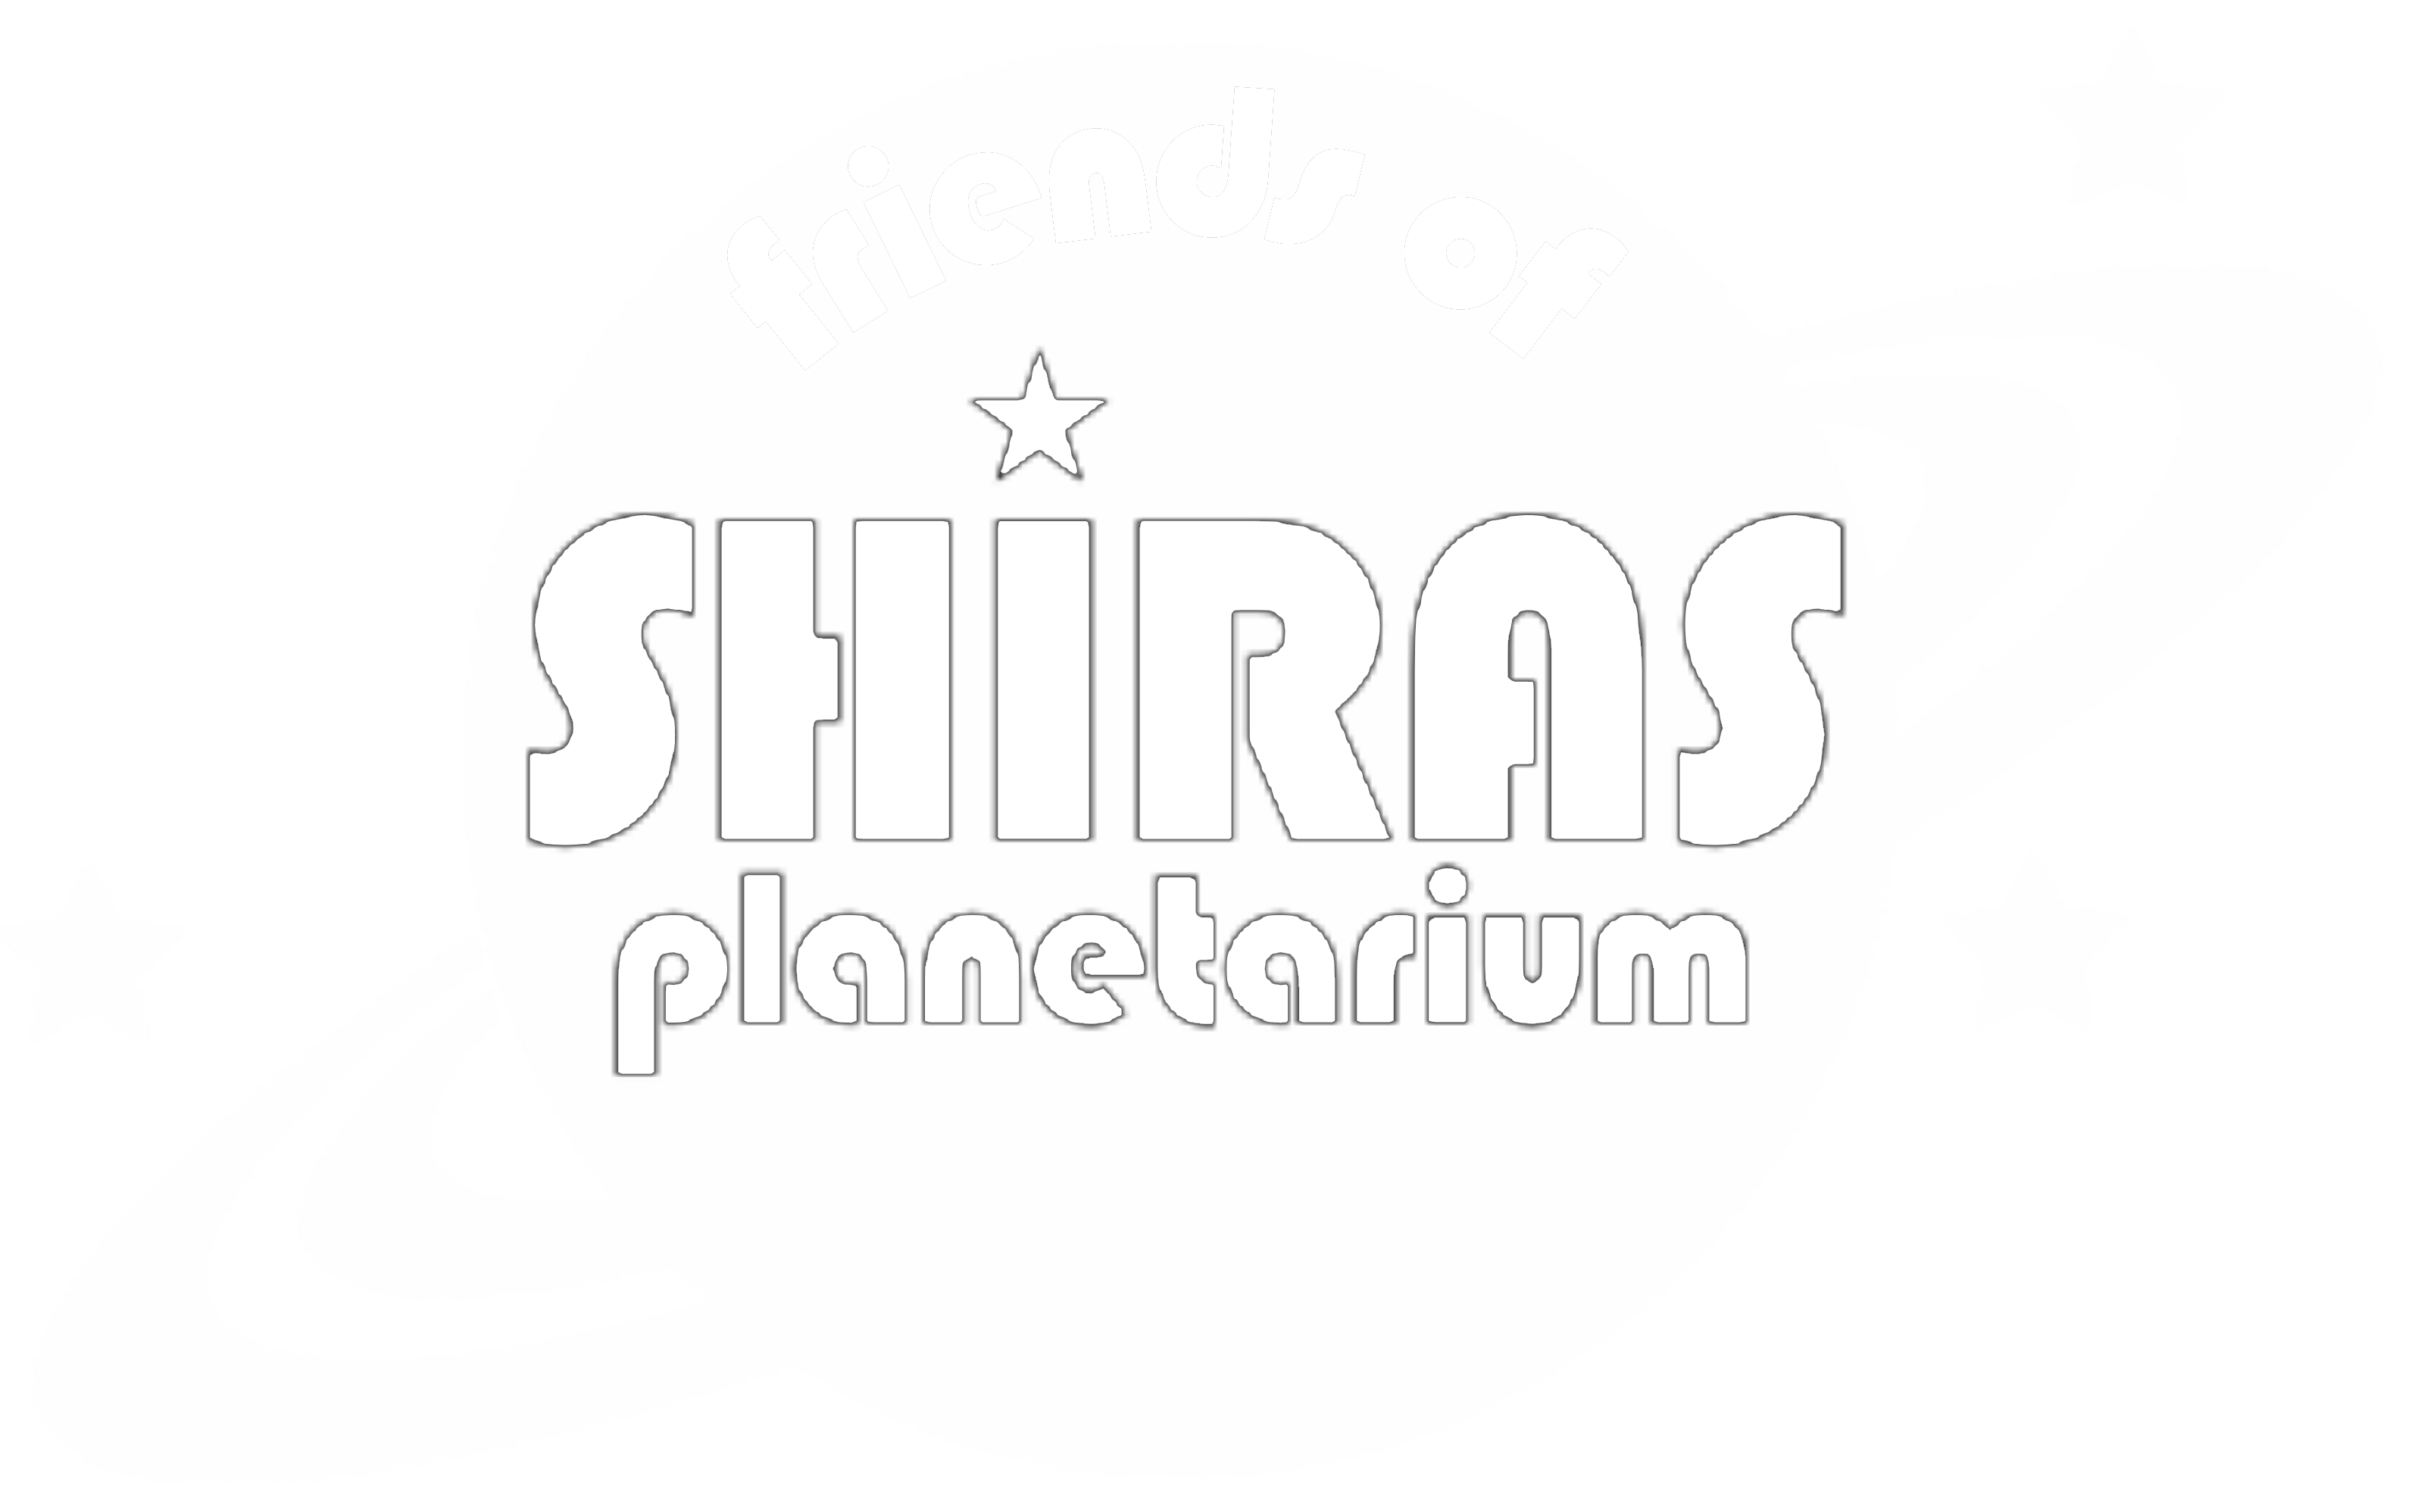 Friends of Shiras Planetarium Logo